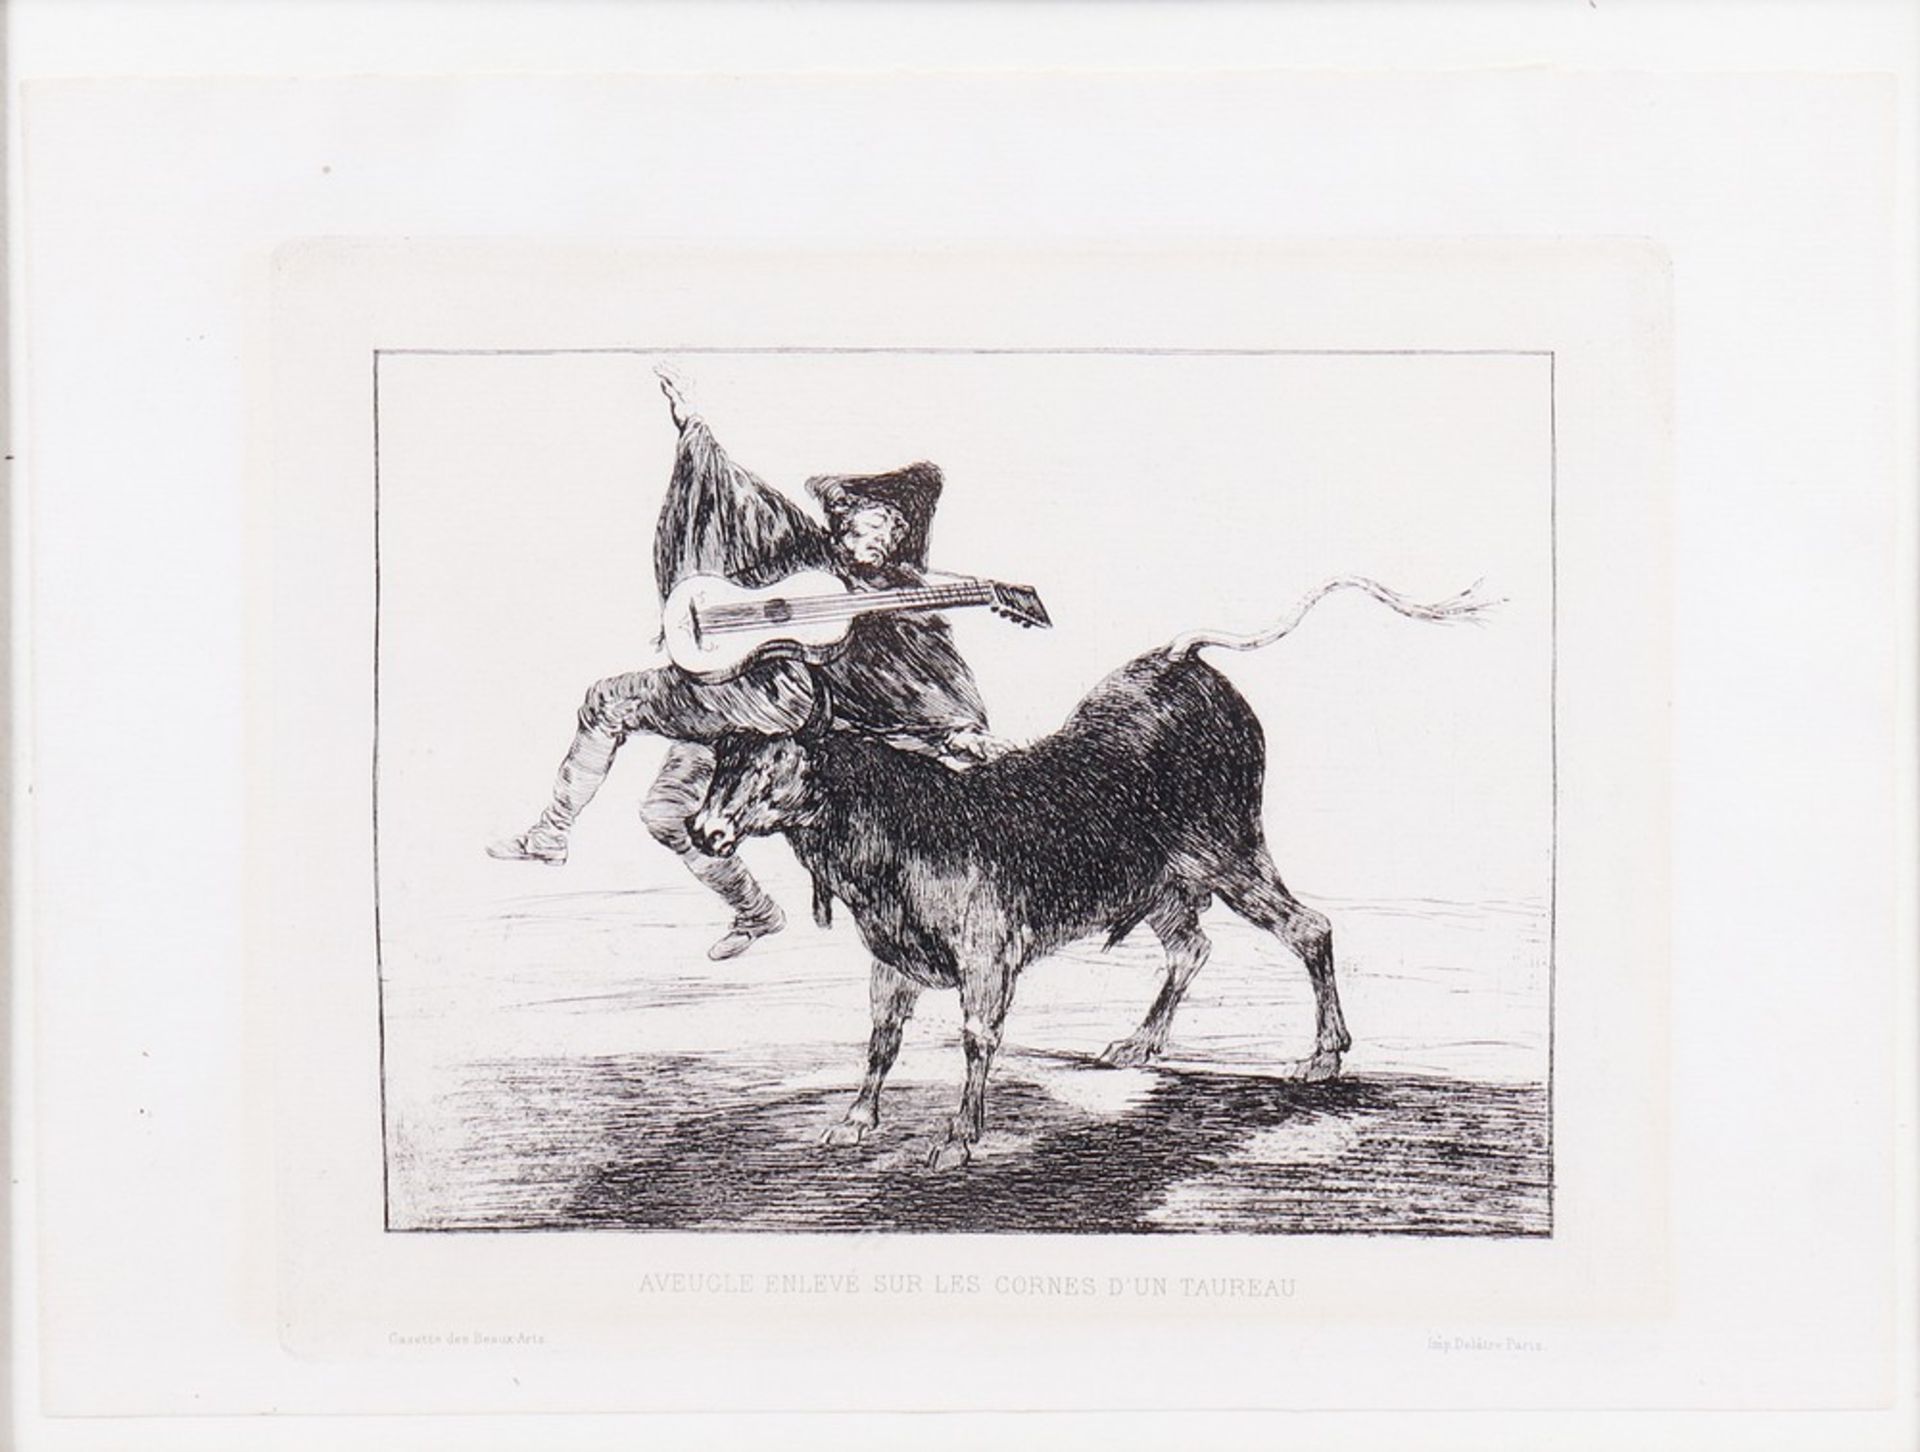 Francisco de Goya (1746, Fuendetodos, Spain - 1828, Bordeaux) - Image 2 of 4